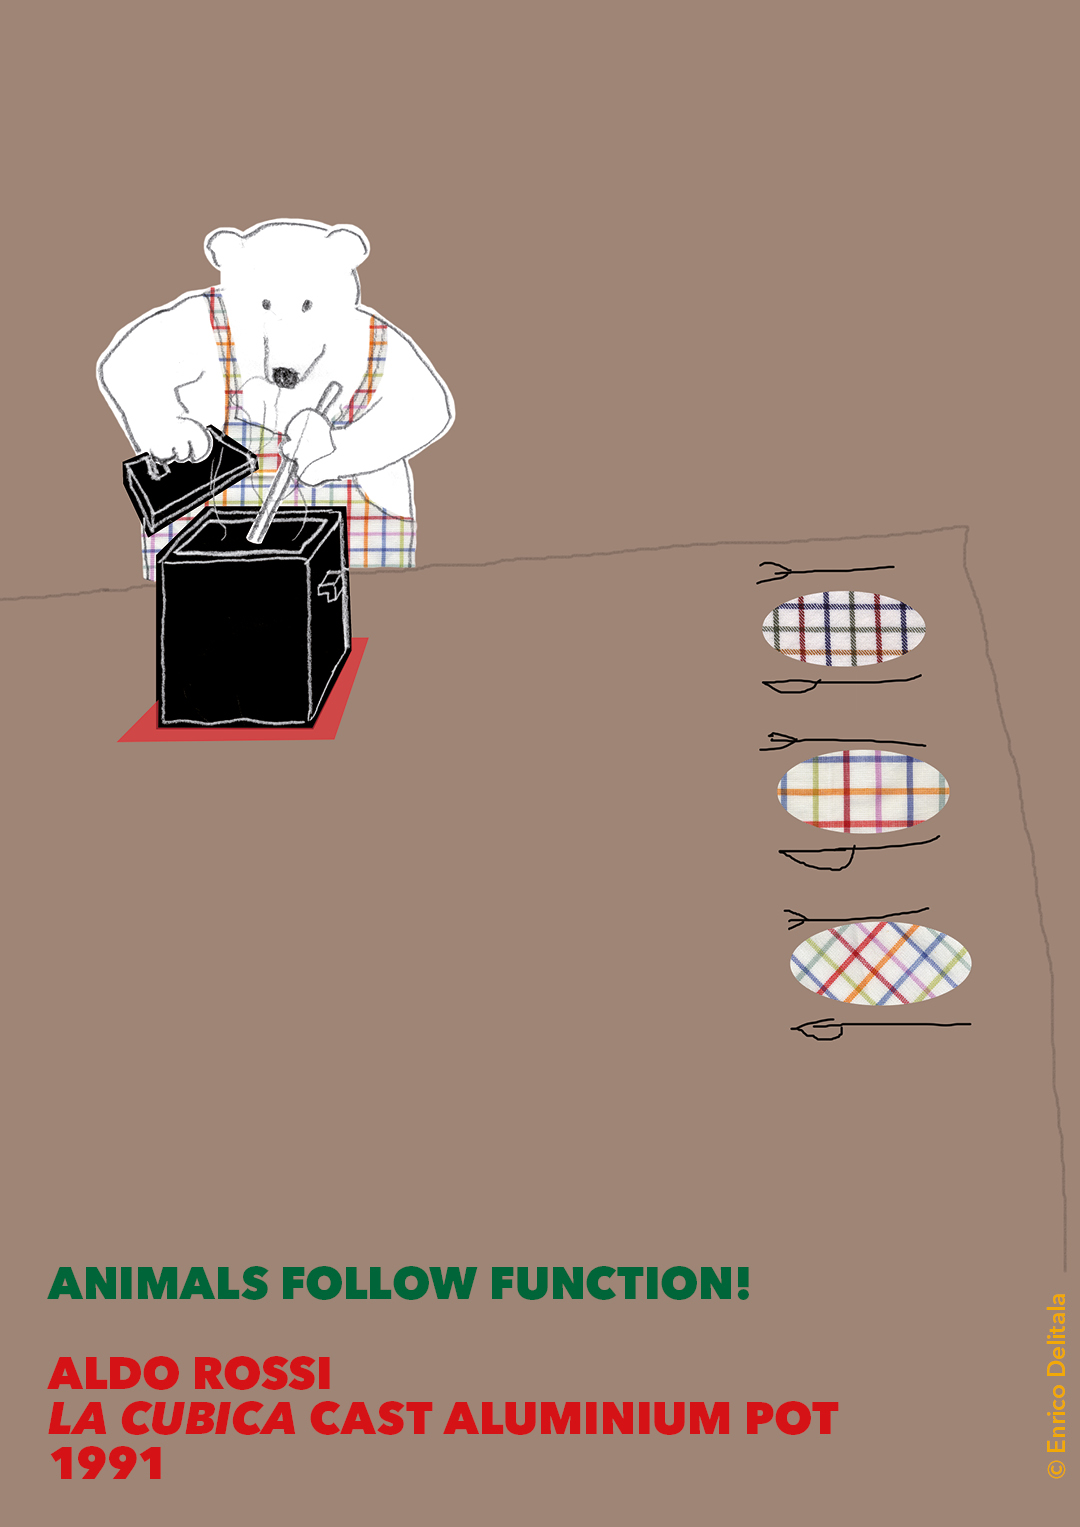 Orso: Enrico Delitala illustrator animals follow function form follows function Aldo Rossi La cubica